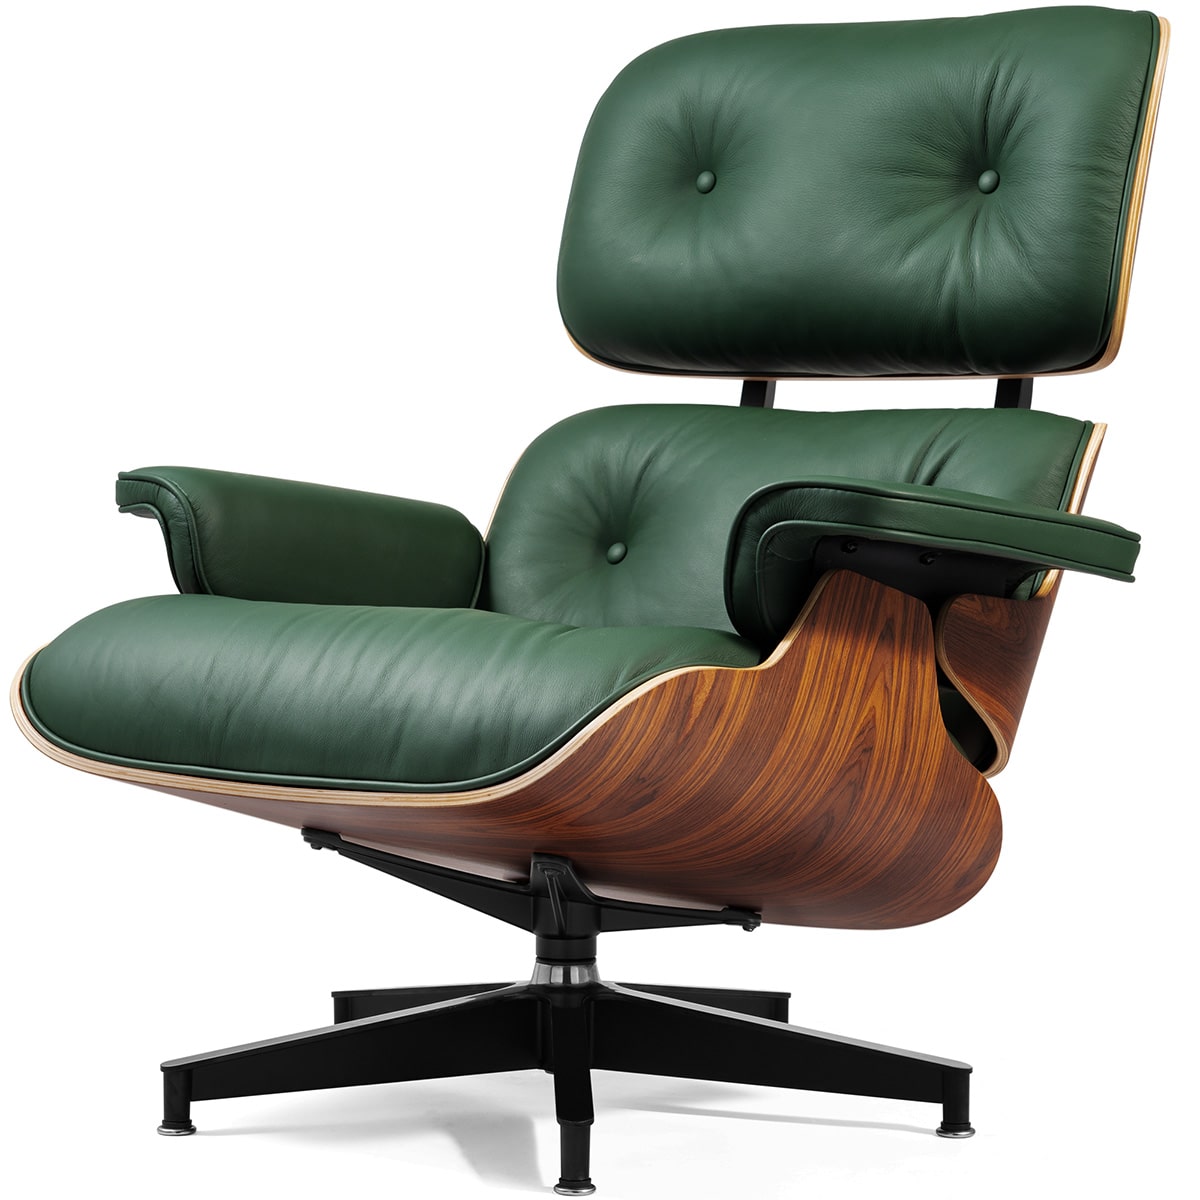 Grote hoeveelheid magnifiek geeuwen Eames Lounge Chair replica - CurverK .com